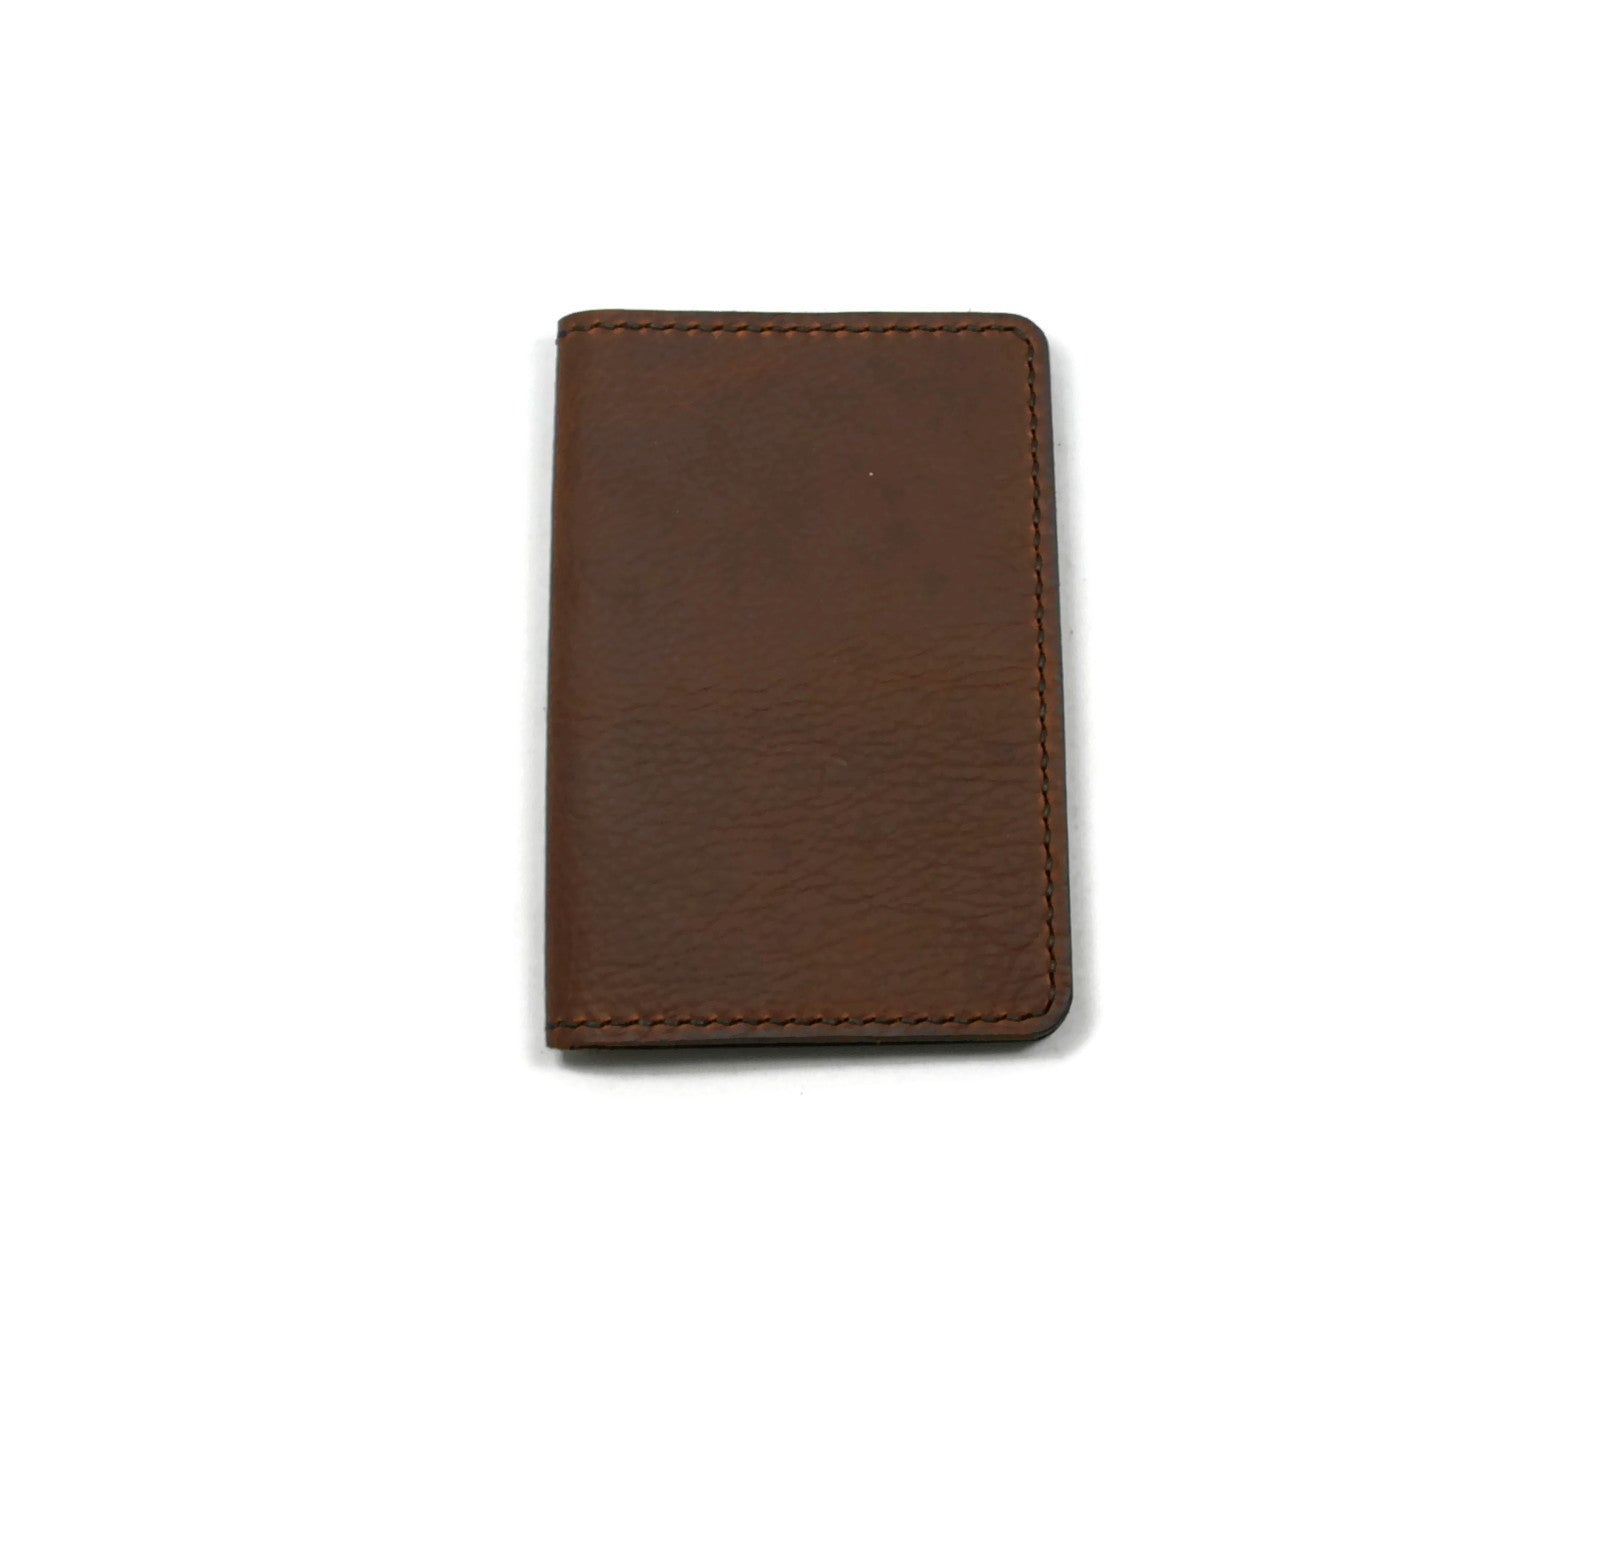 Notebook/Passport Cover — Standard